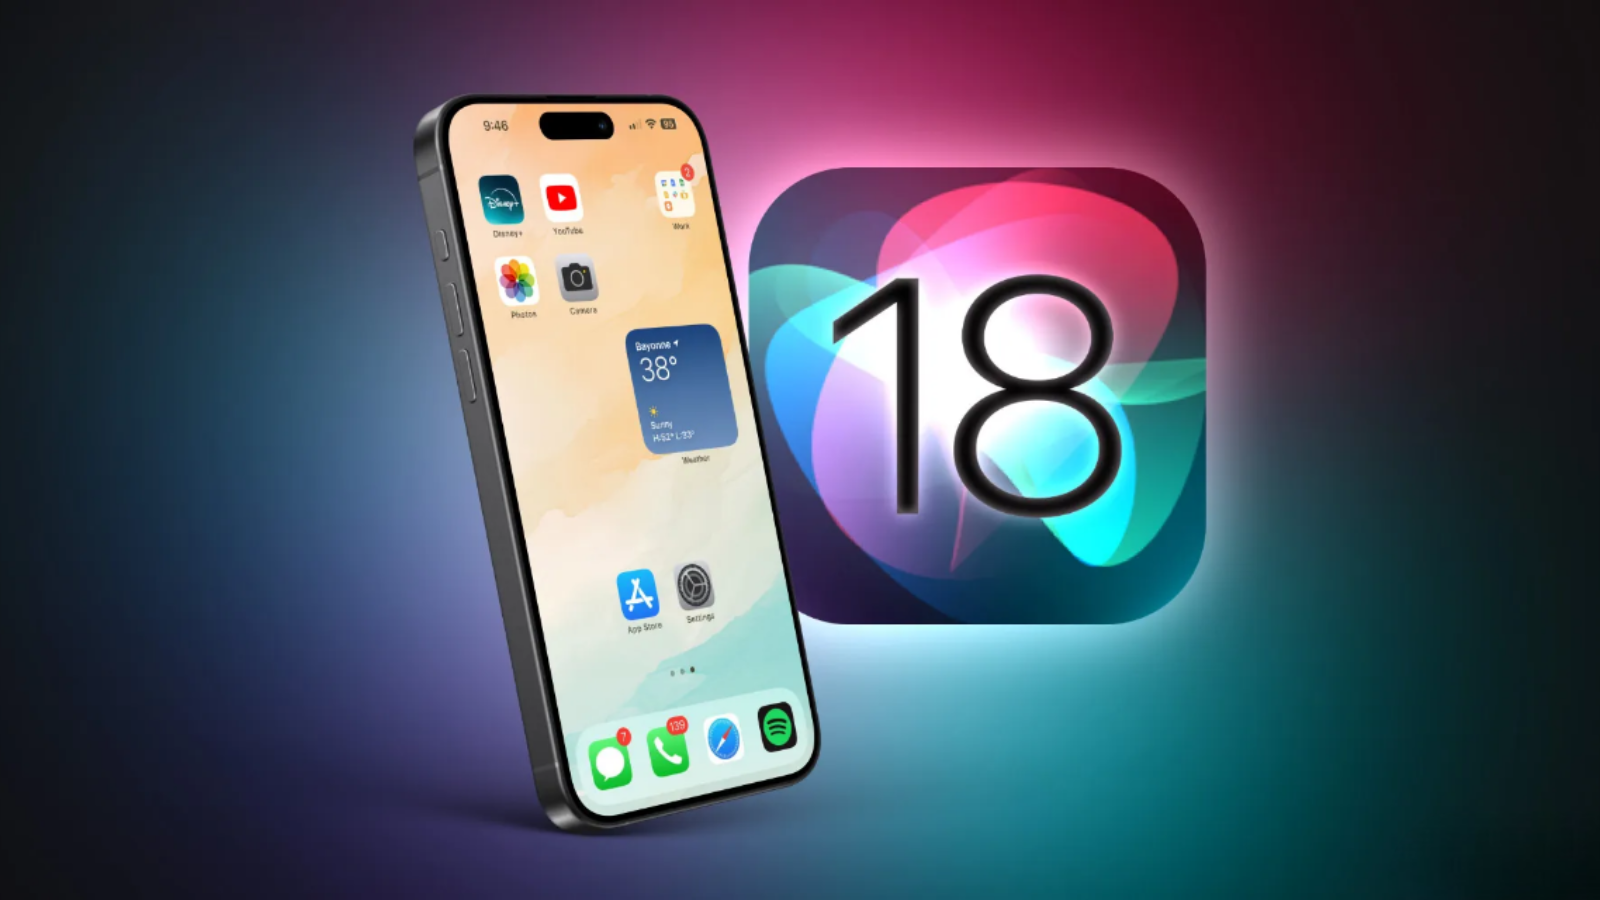 Como instalar o ios 18 no iphone agora. A versão beta do ios 18 já está disponível para testes, e você poderá utilizar todos os recursos anunciados na wwdc24. Veja agora como atualizar o iphone com o ios 18